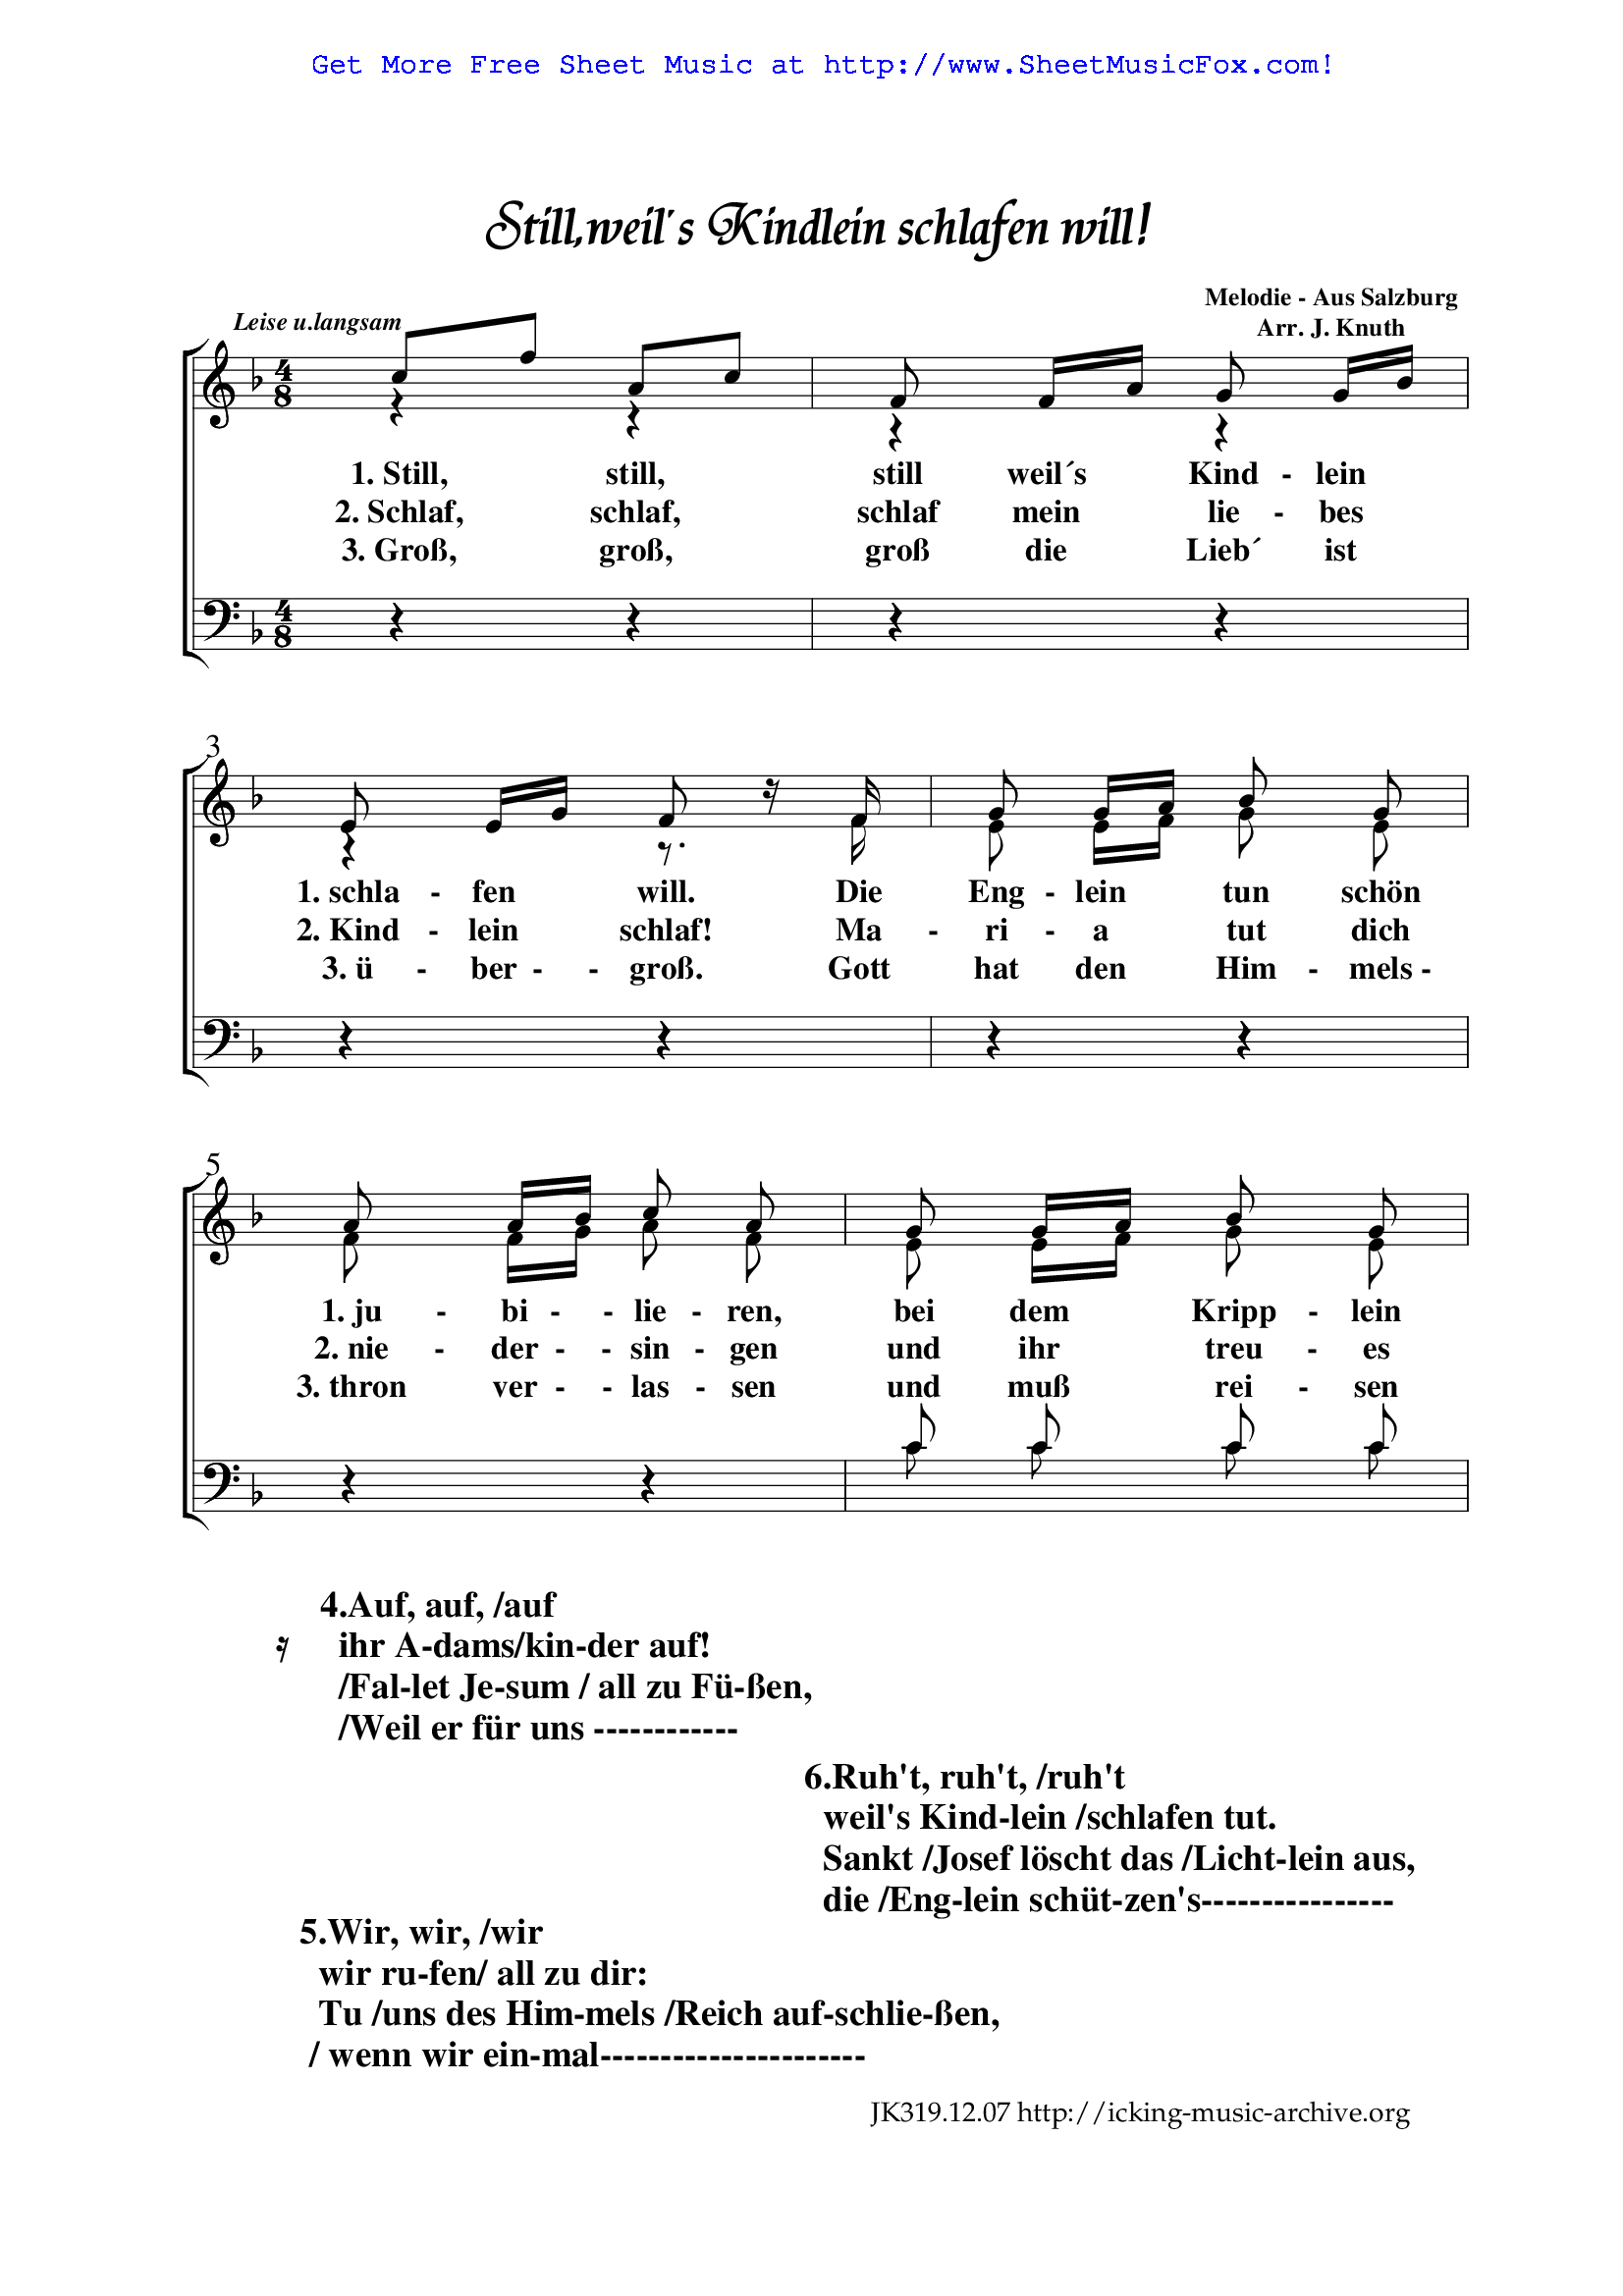 Free sheet music for Still, weil's Kindlein schlafen (Knuth, Jürgen) by - Still Still Still Weil's Kindlein Schlafen Will